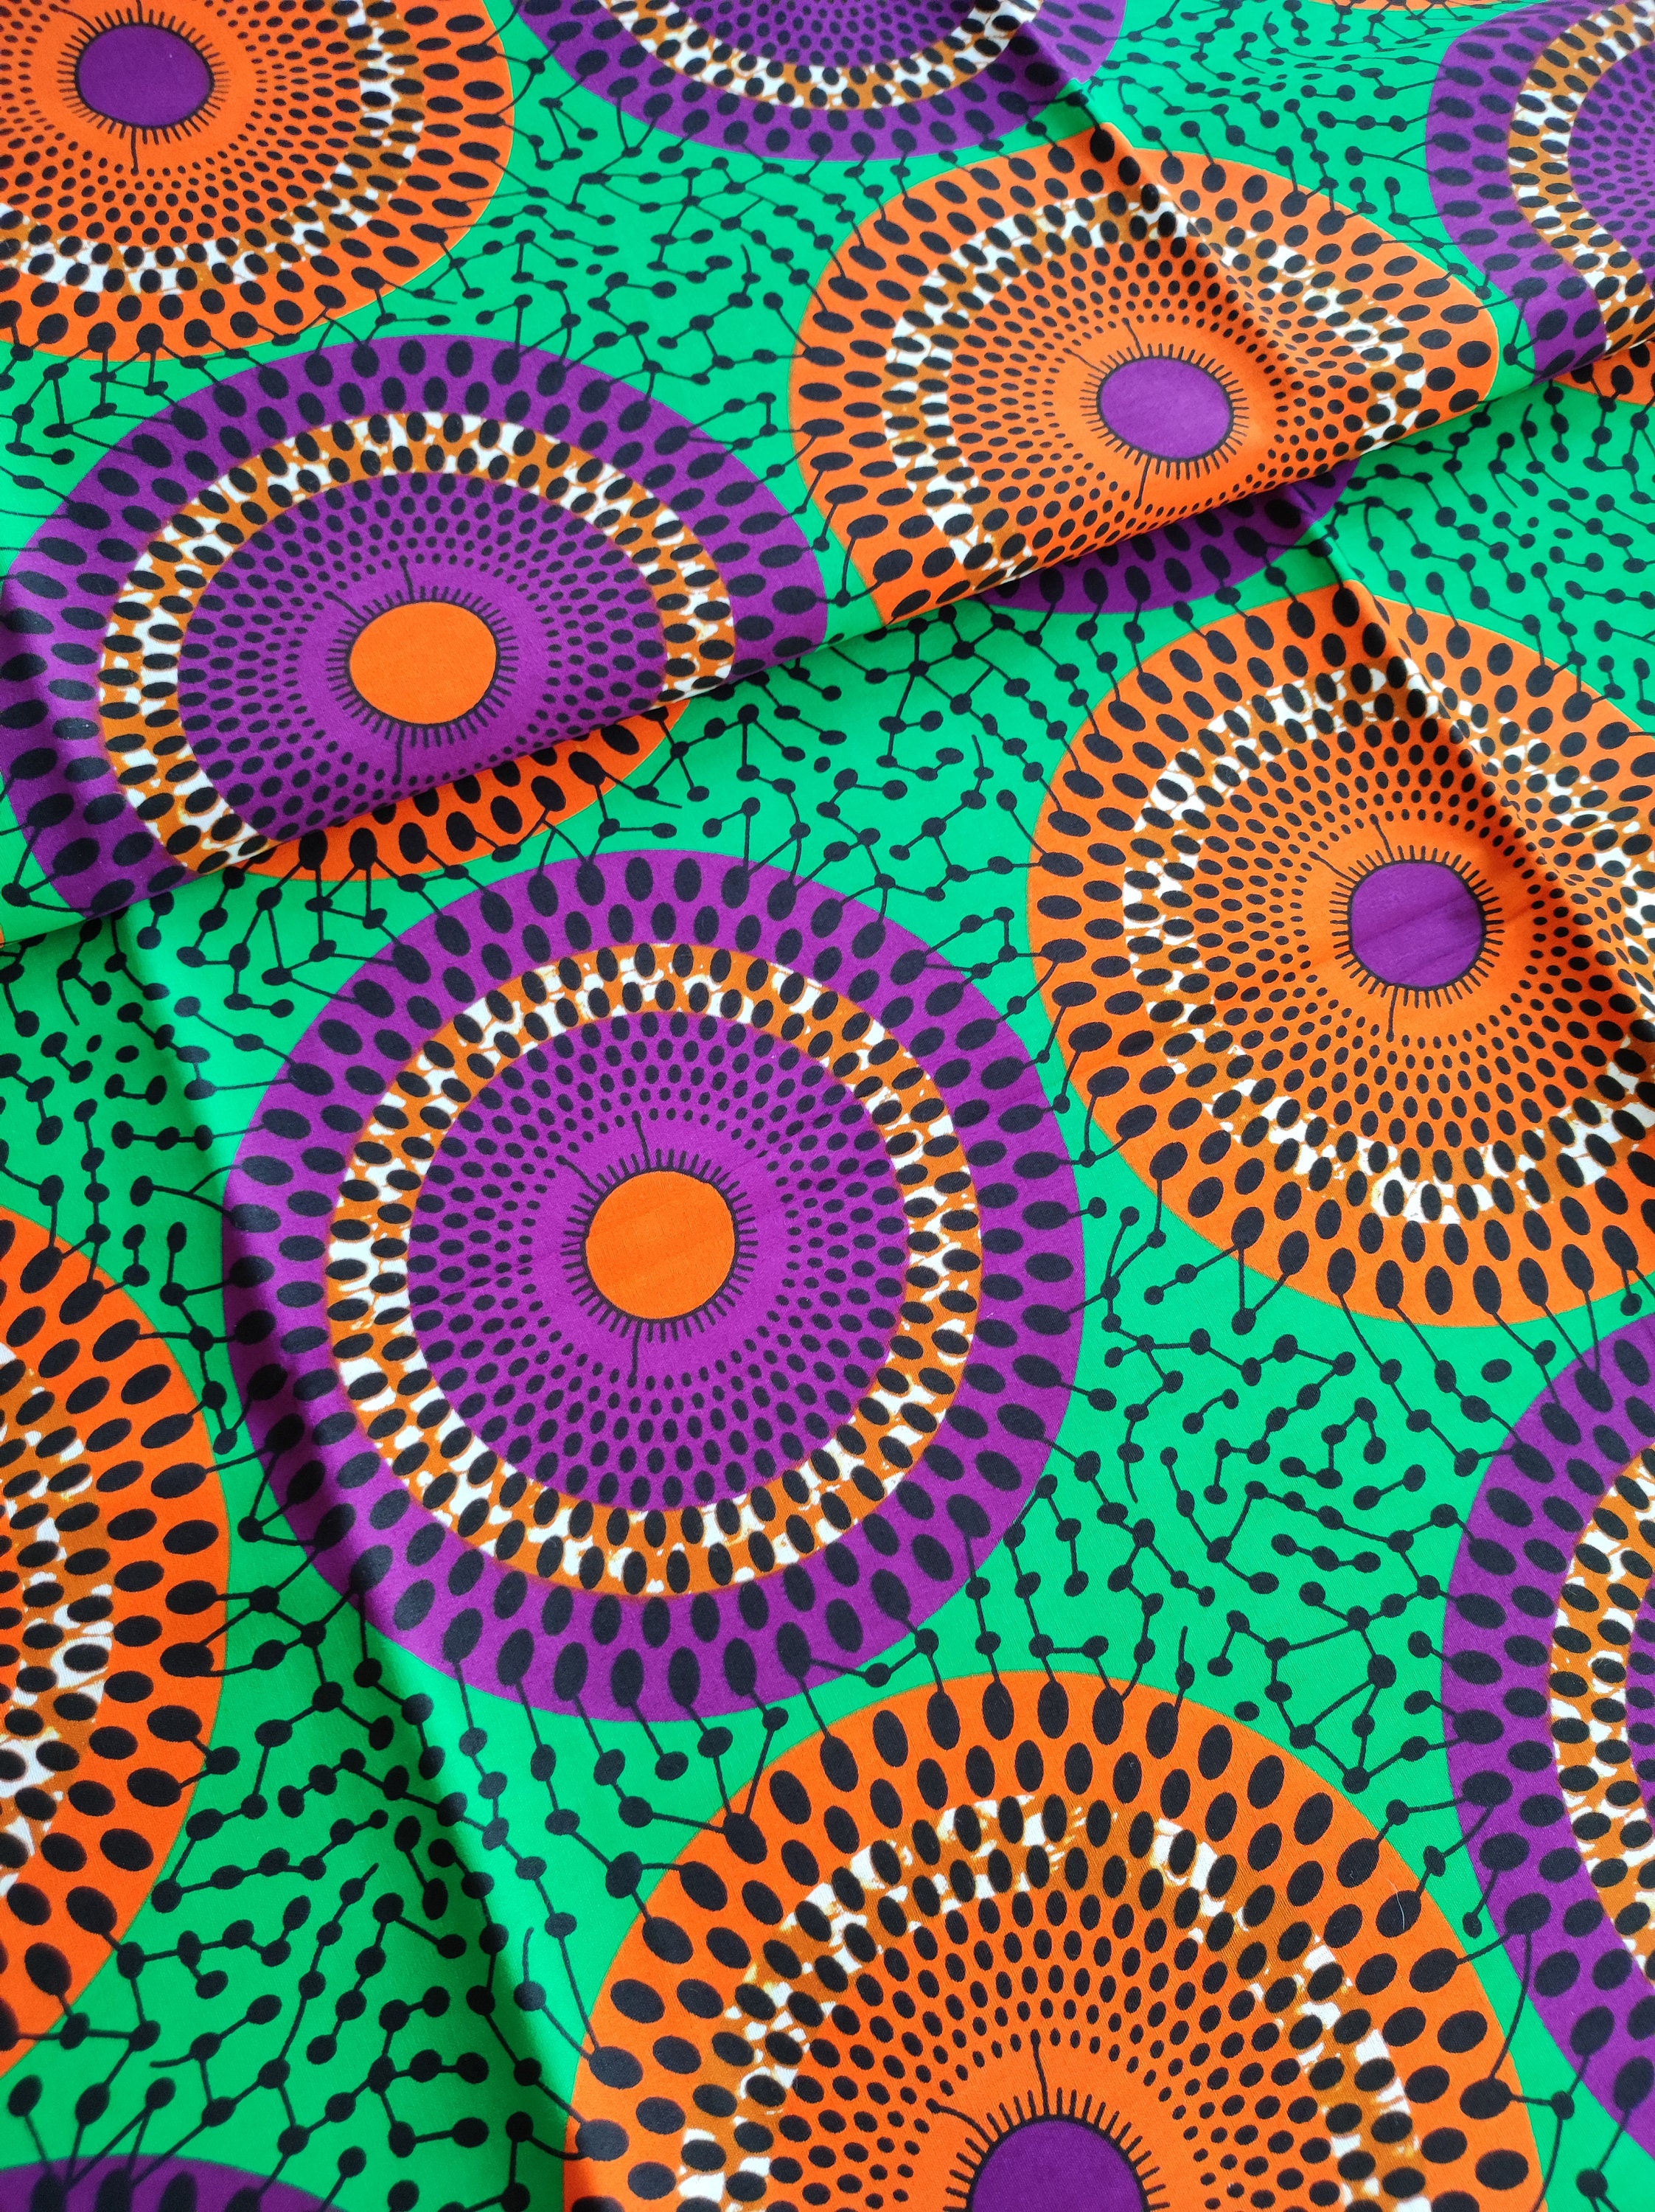 Telas africanas para coser, 8 piezas Ankara Jersey Tela por metros, 20 x 16  pulgadas/50